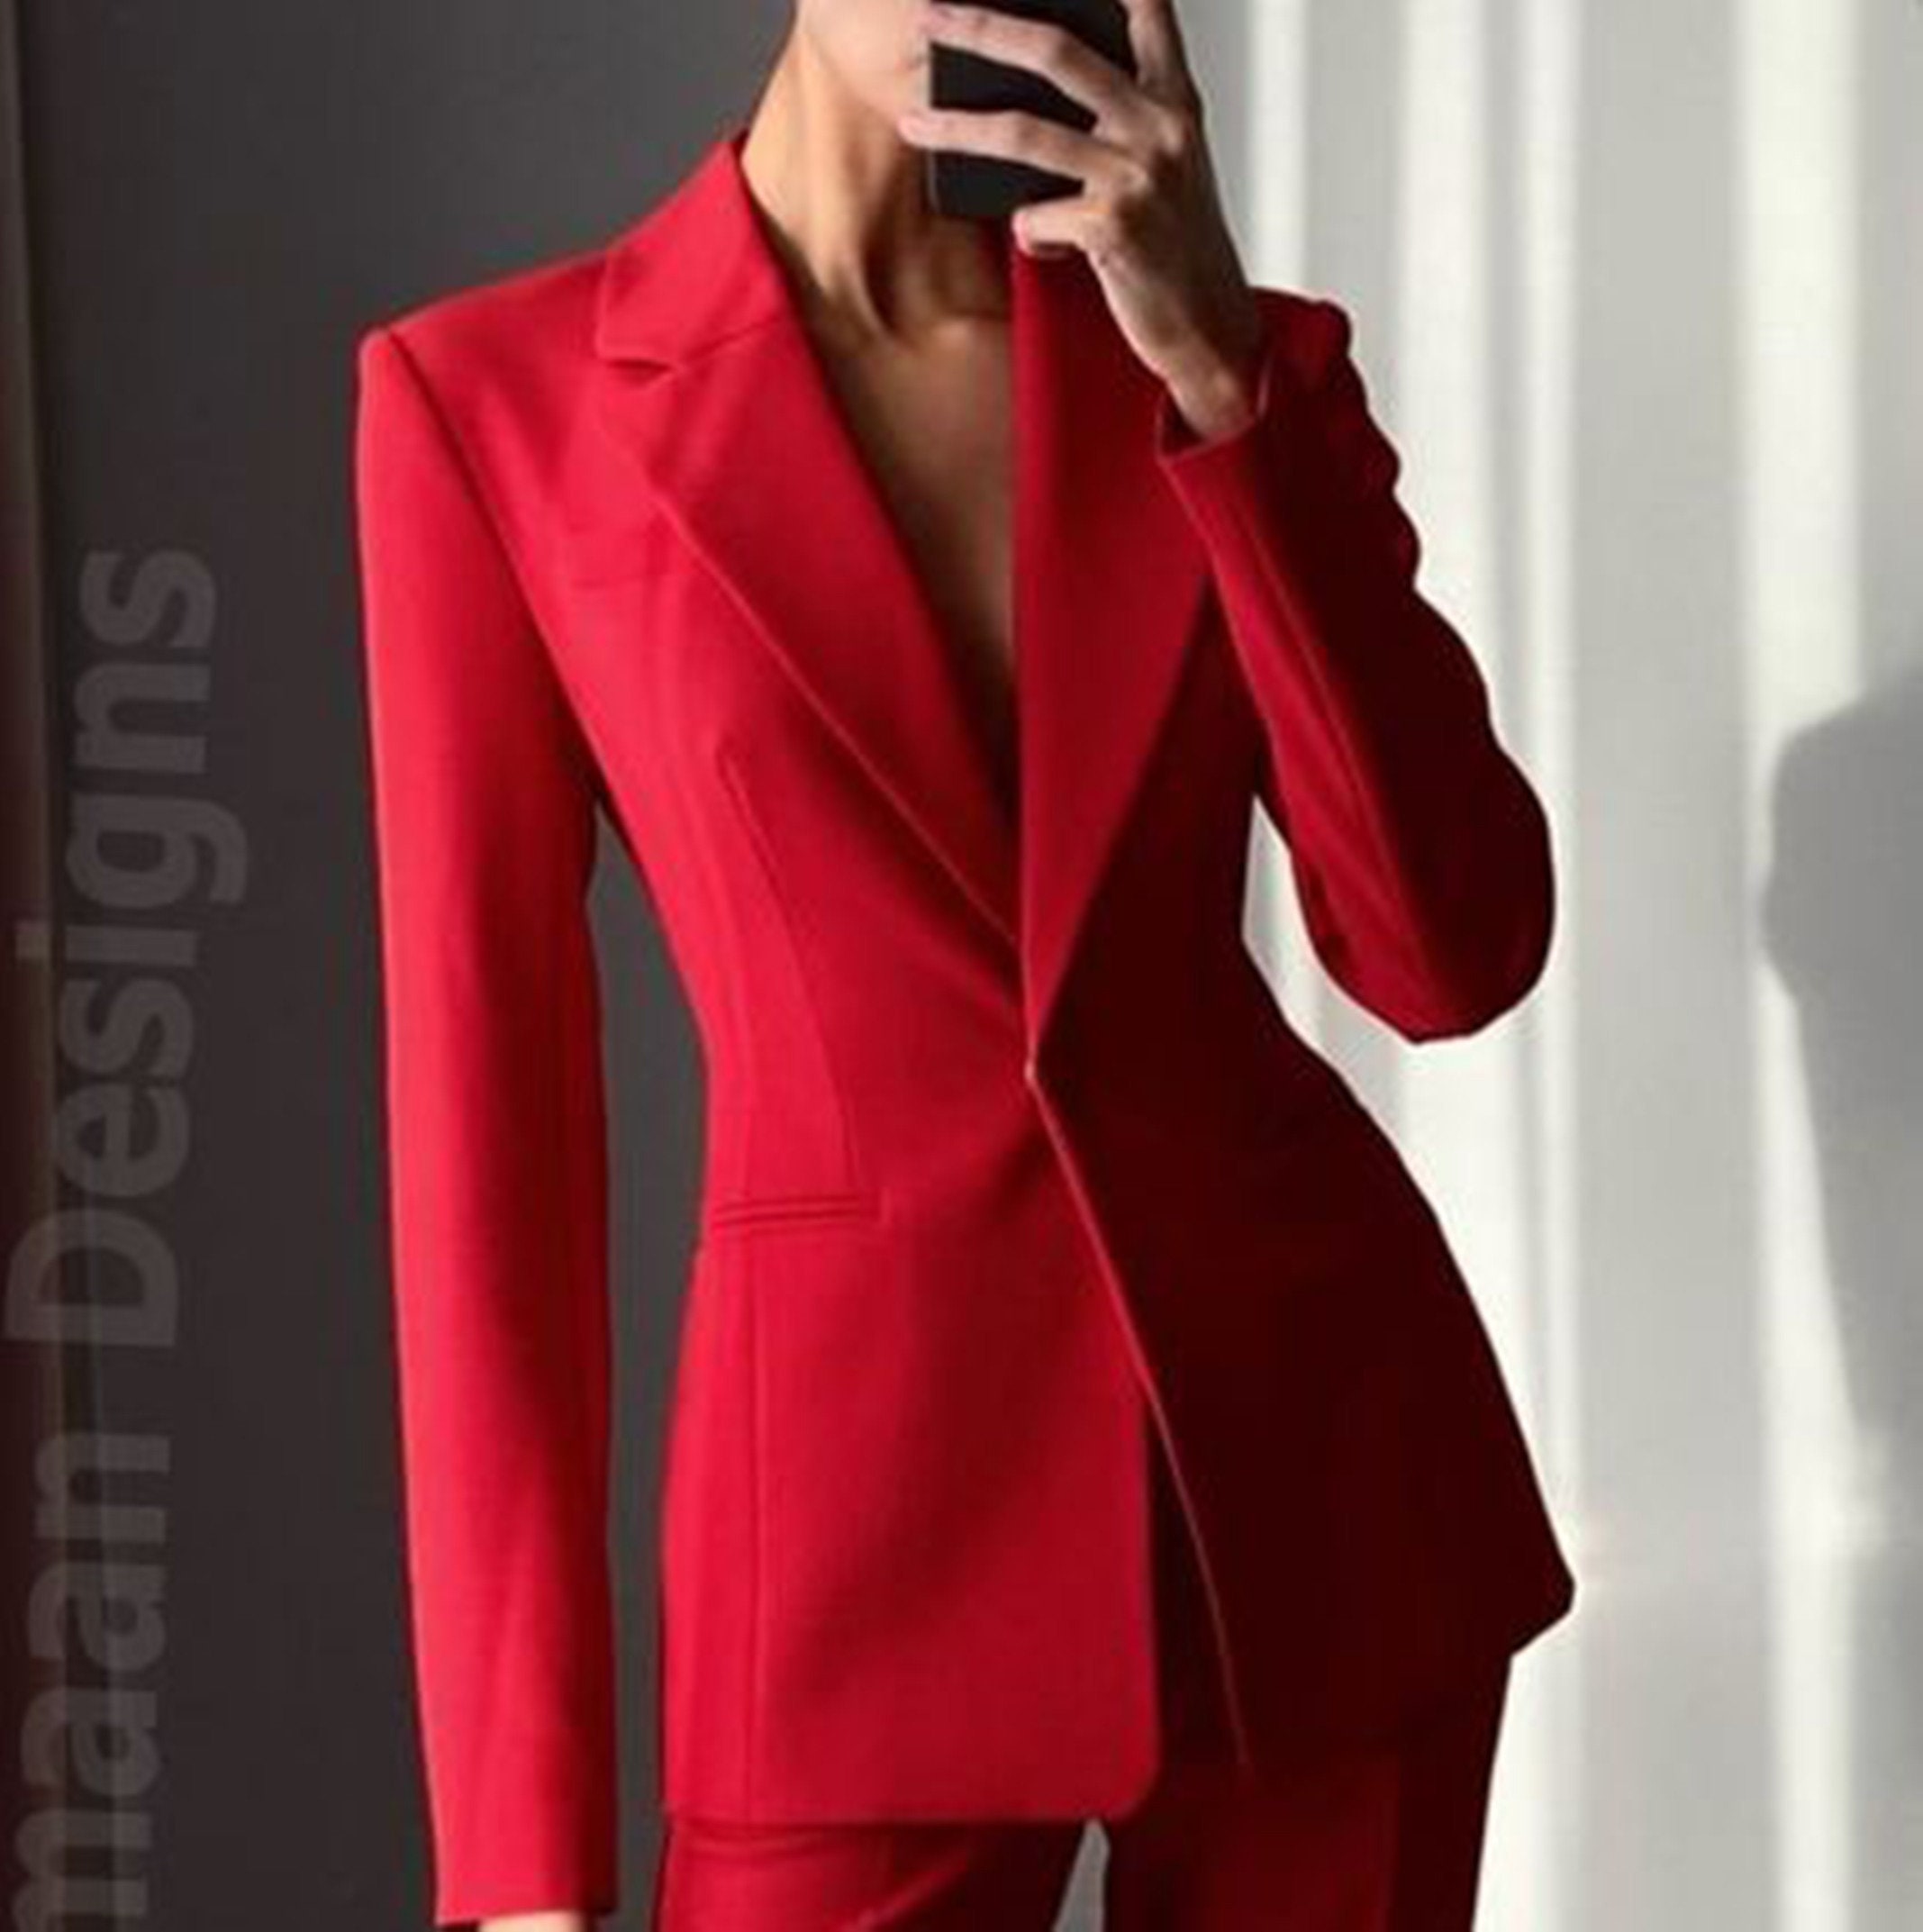 Women Suit, Red Women Suit, Women Suit Set, Women Business Suit, Dressy Red  Suit, Red Suit Women, Pant Suit Women, Red Pant Suit, Formal Sui 